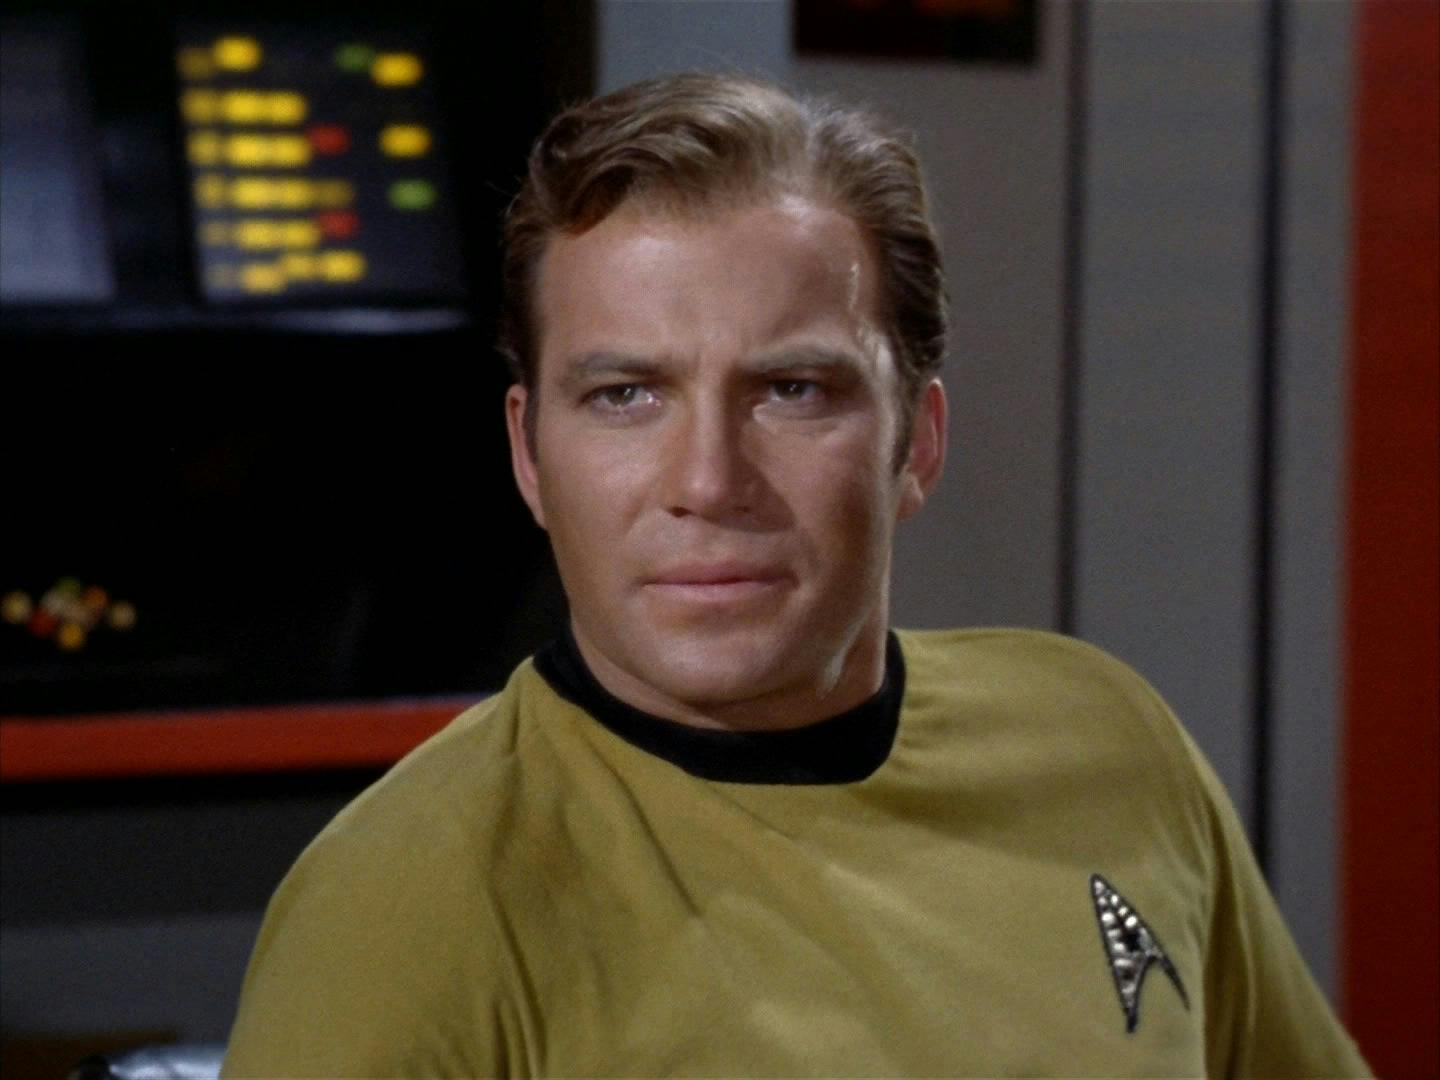 Star Trek: The Original Series - 